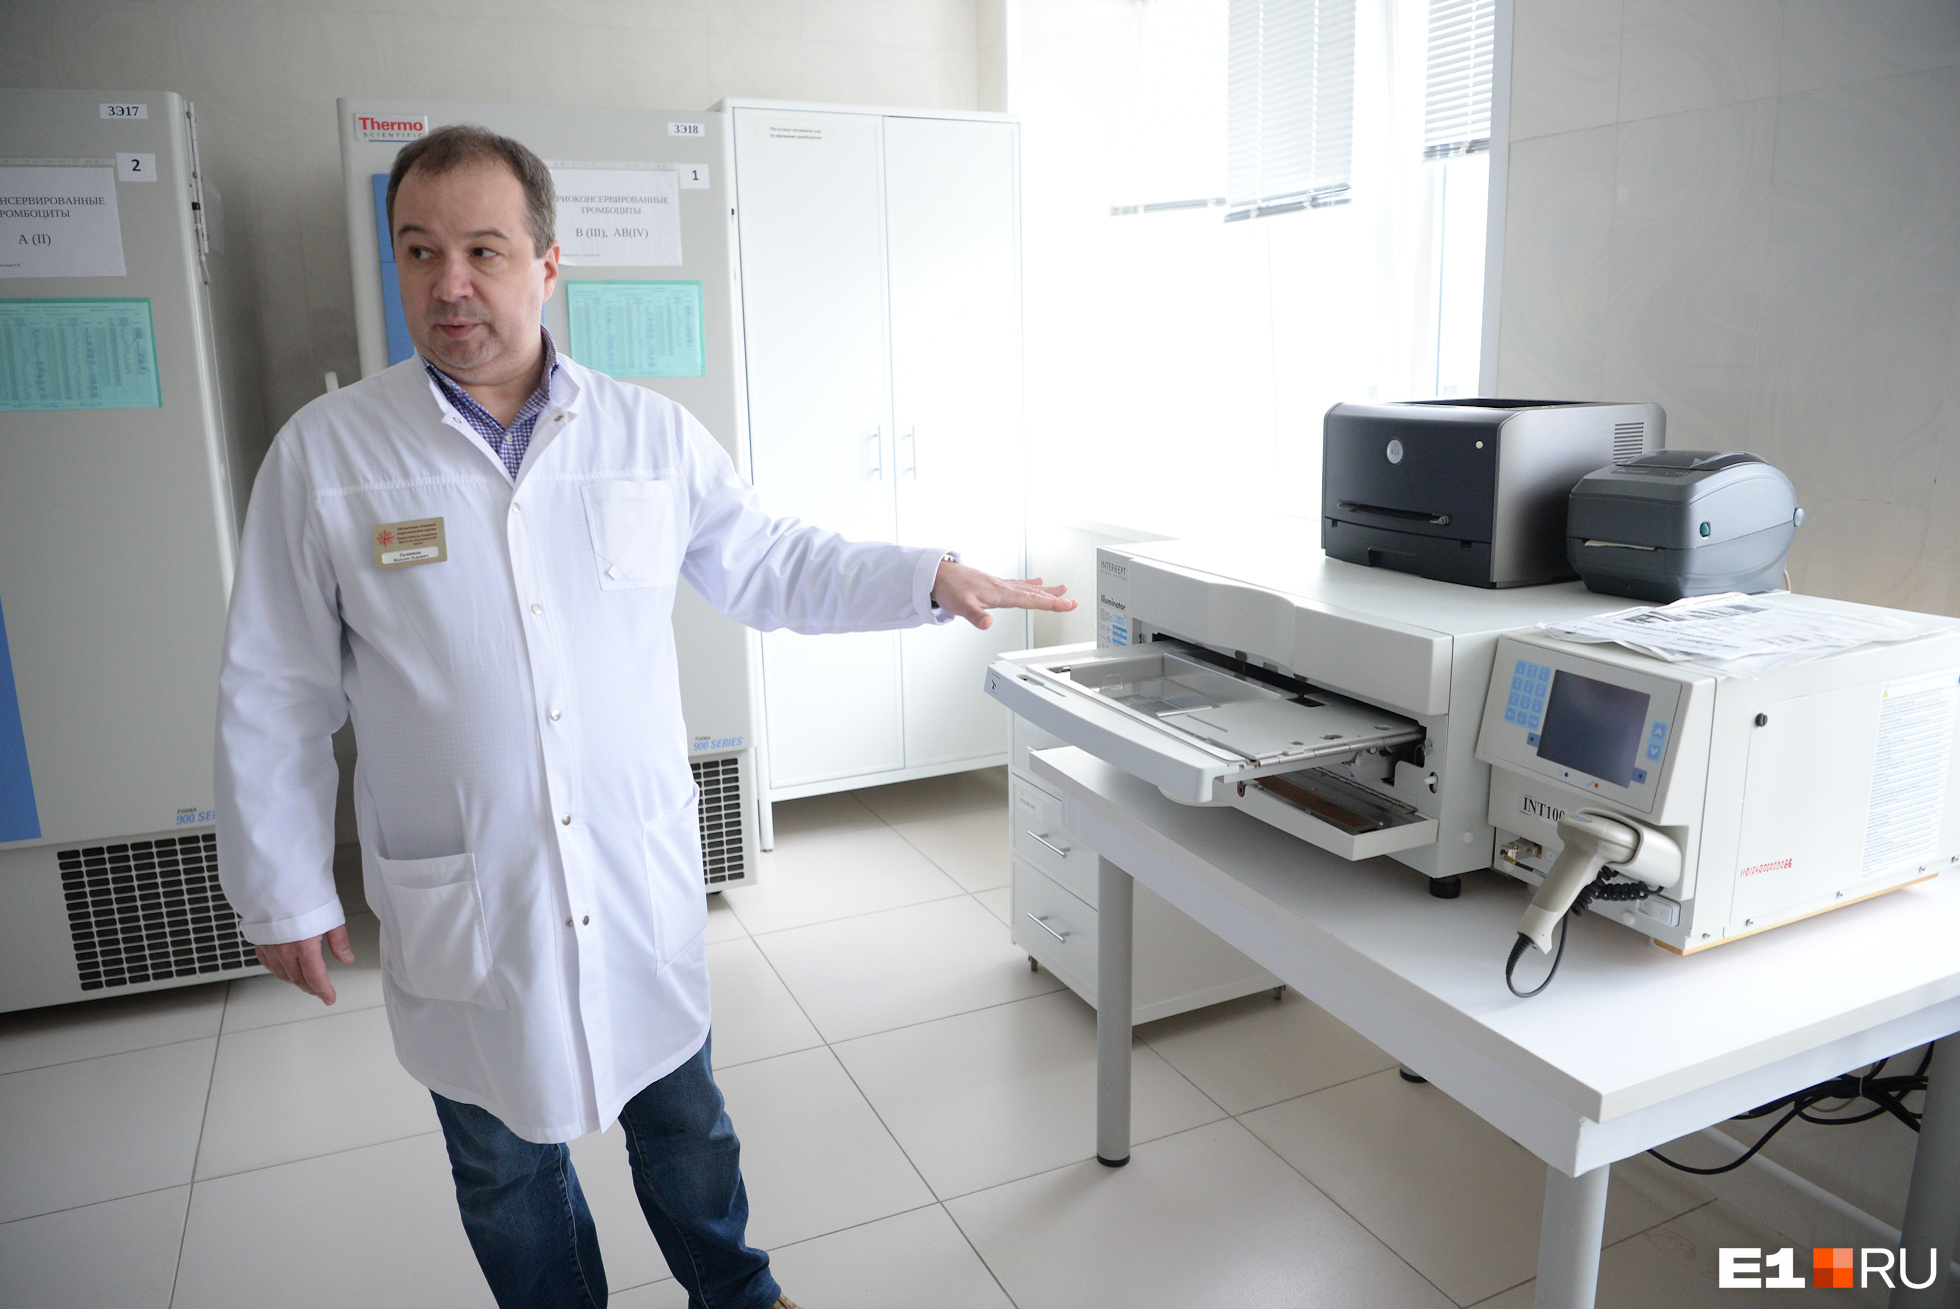 Заместитель главврача Максим Галимов показывает прибор для инактивации плазмы крови